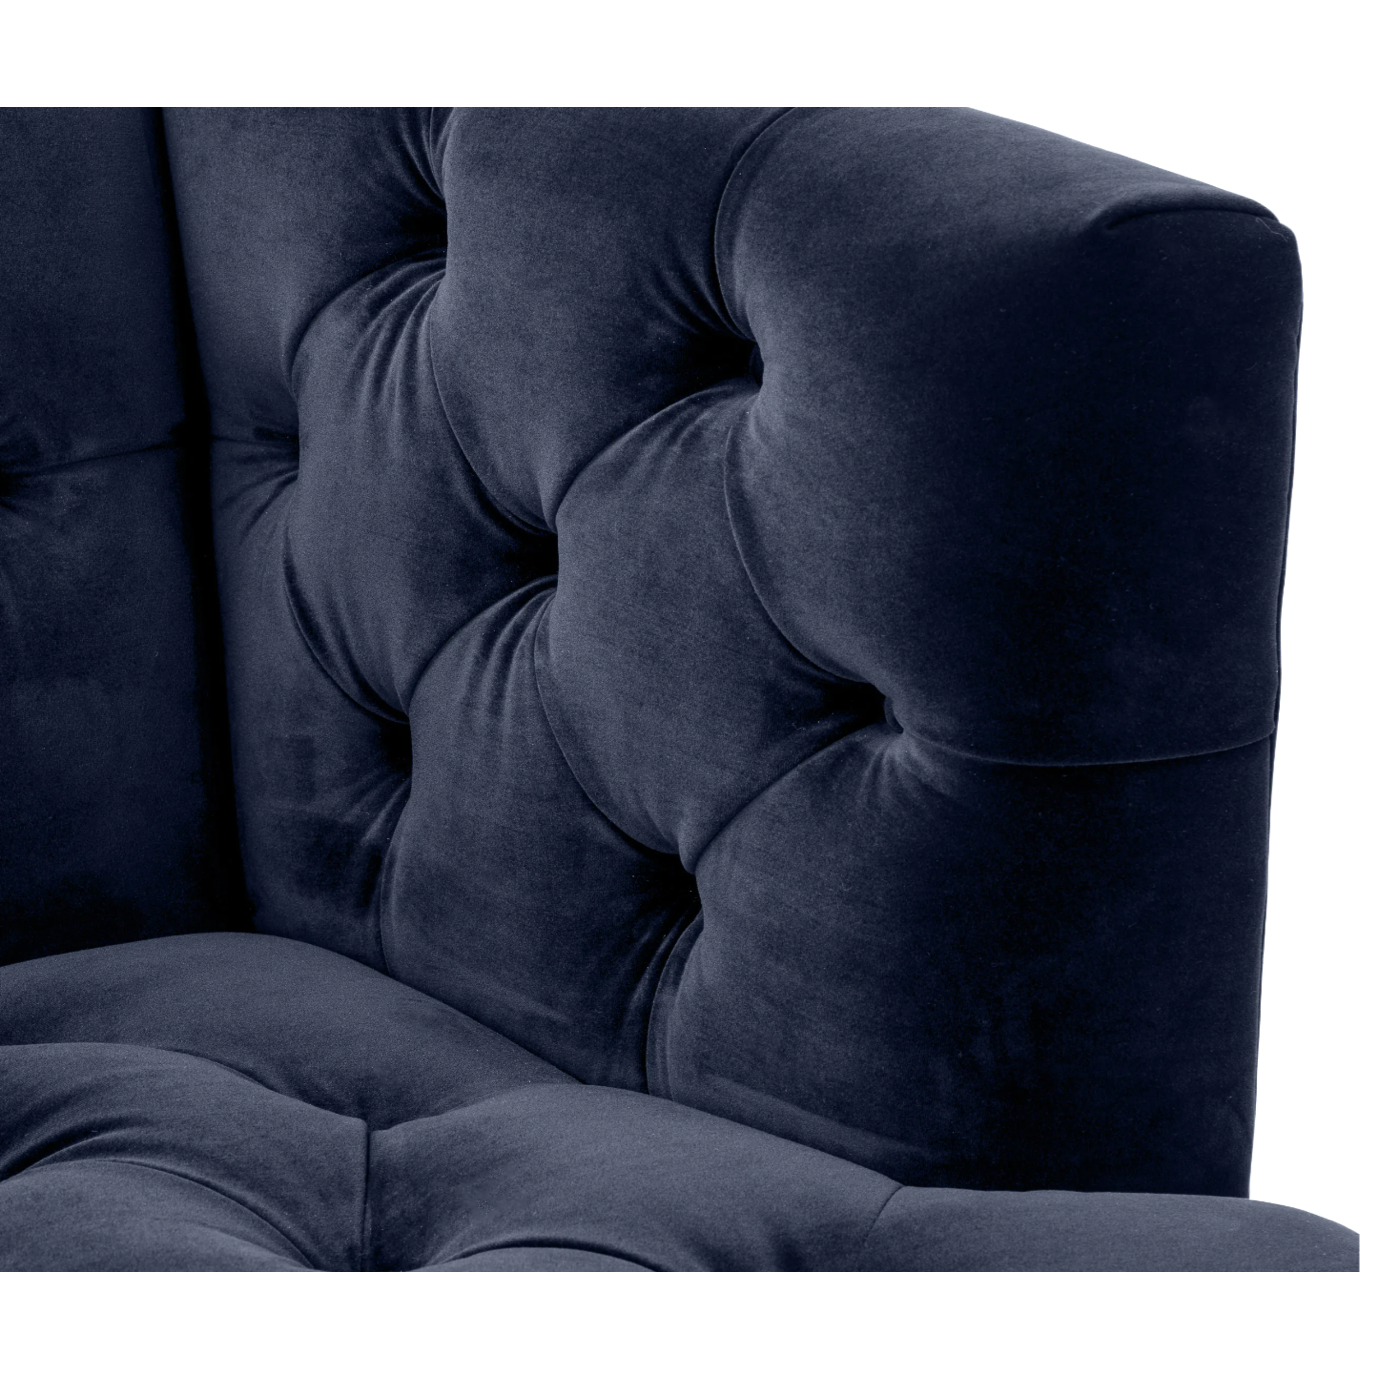 Modern Tufted Sofa in Midnight Blue Velvet